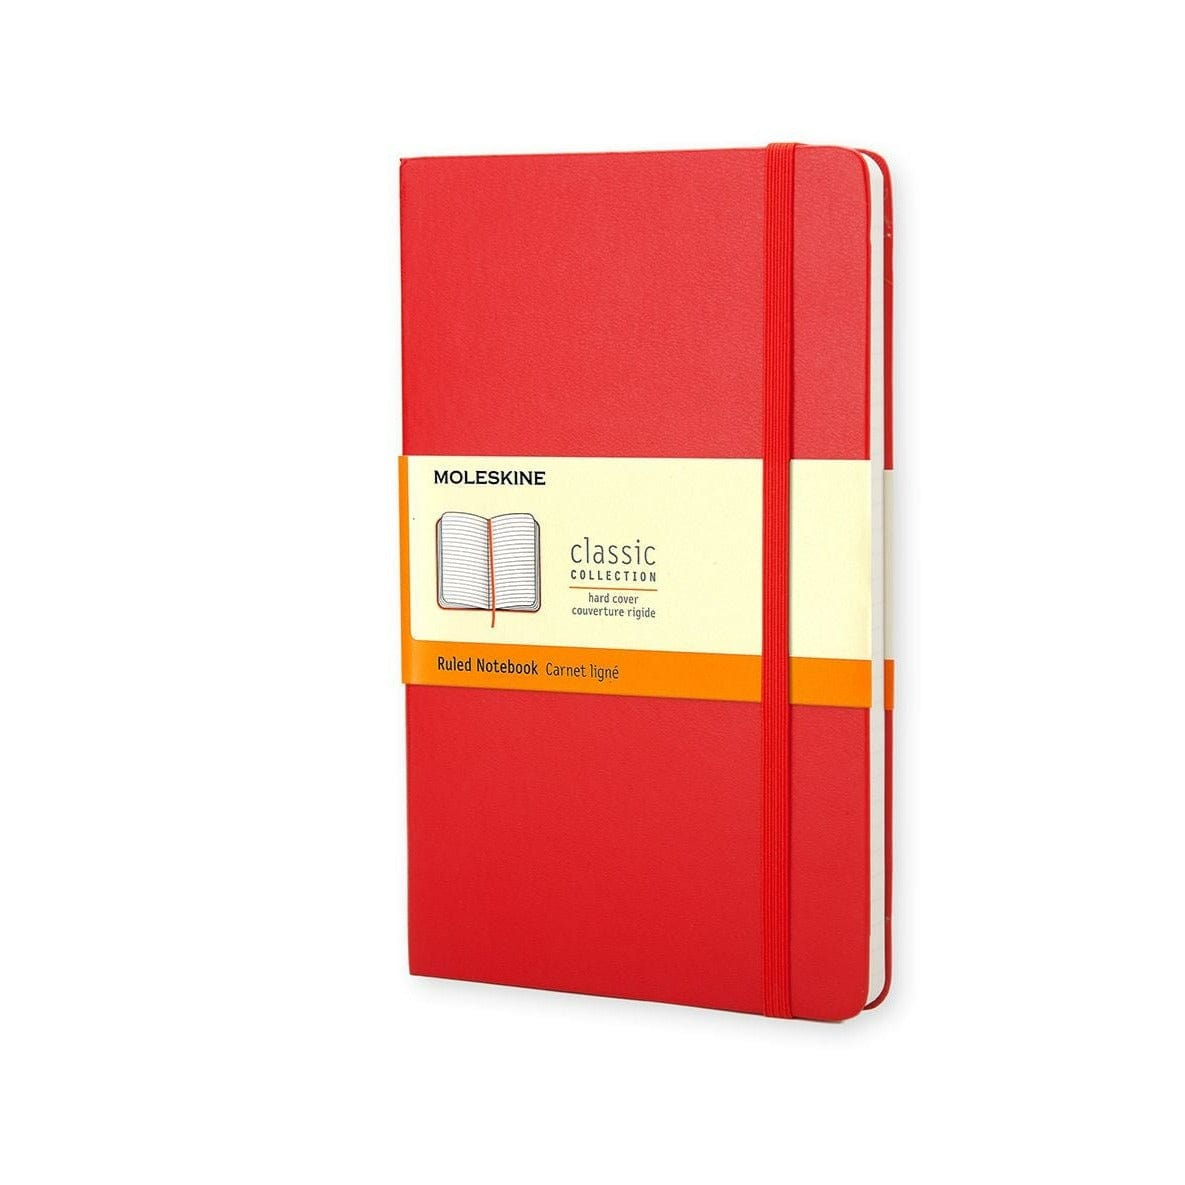 Moleskine Notebook Pocket Ruled Scarlet Red Hard  Cover